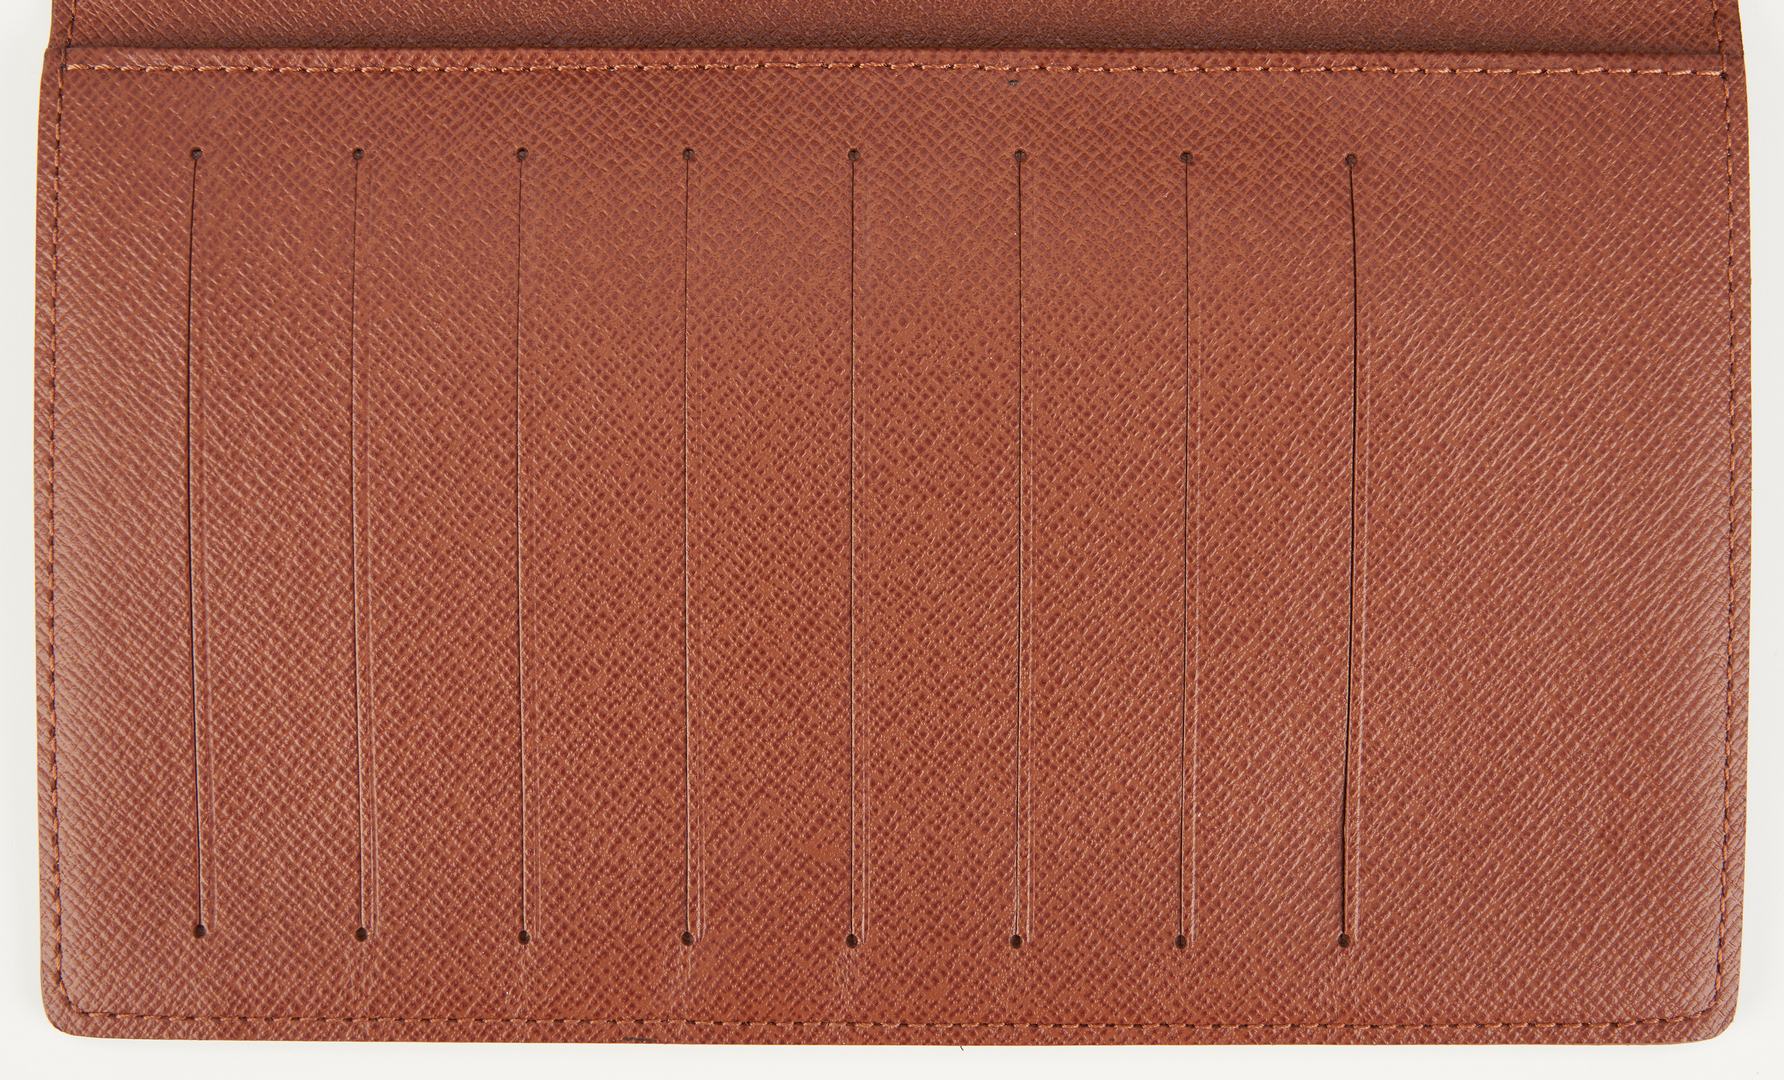 Lot 864: Louis Vuitton Wallet New w/ Box